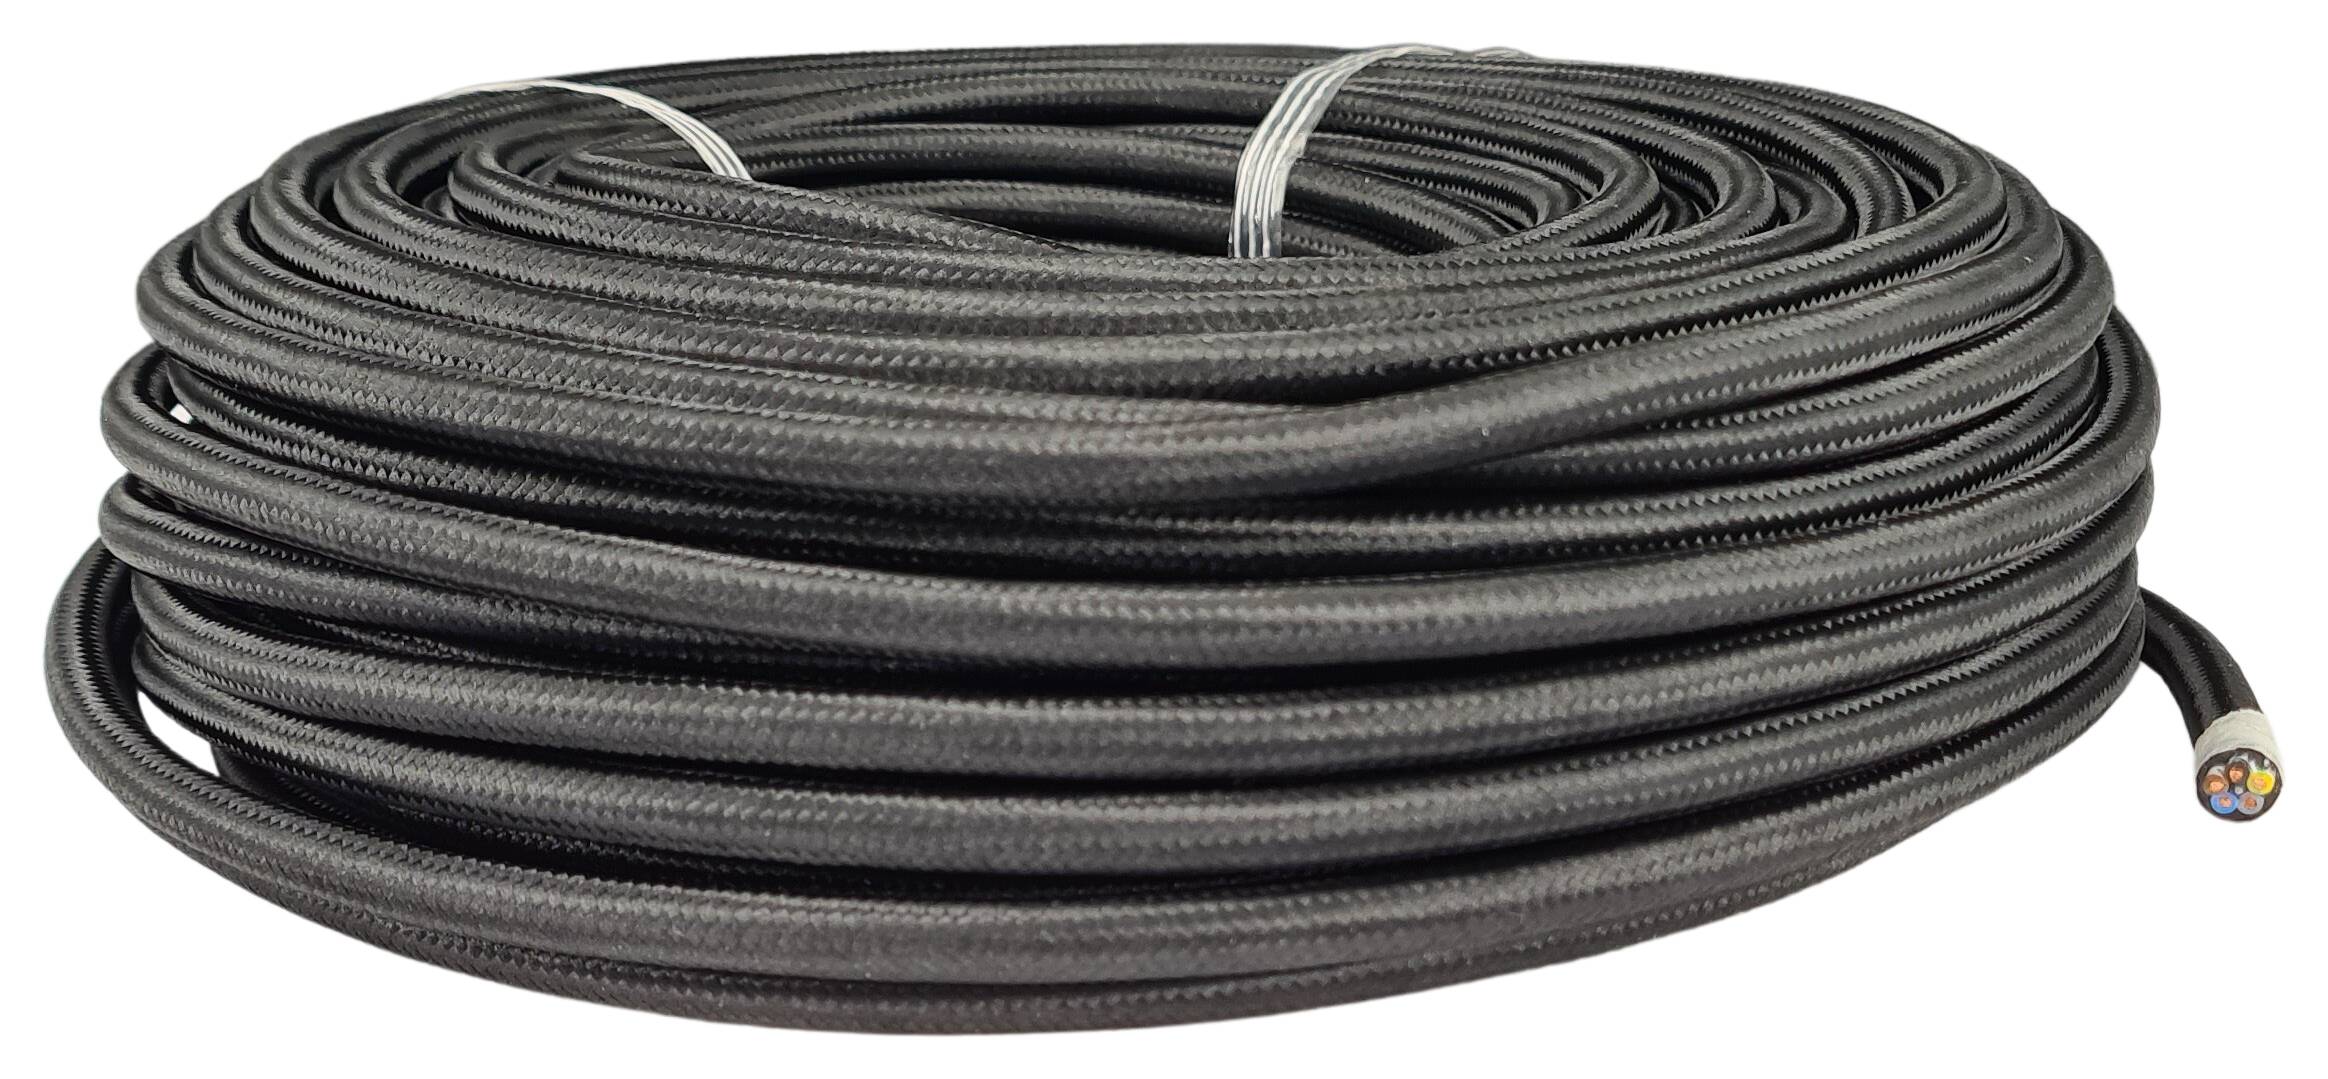 Kabel m. Stahlseil 5G 0,75 HO5VV-F PVC  textilummantelt RAL 9005 schwarz